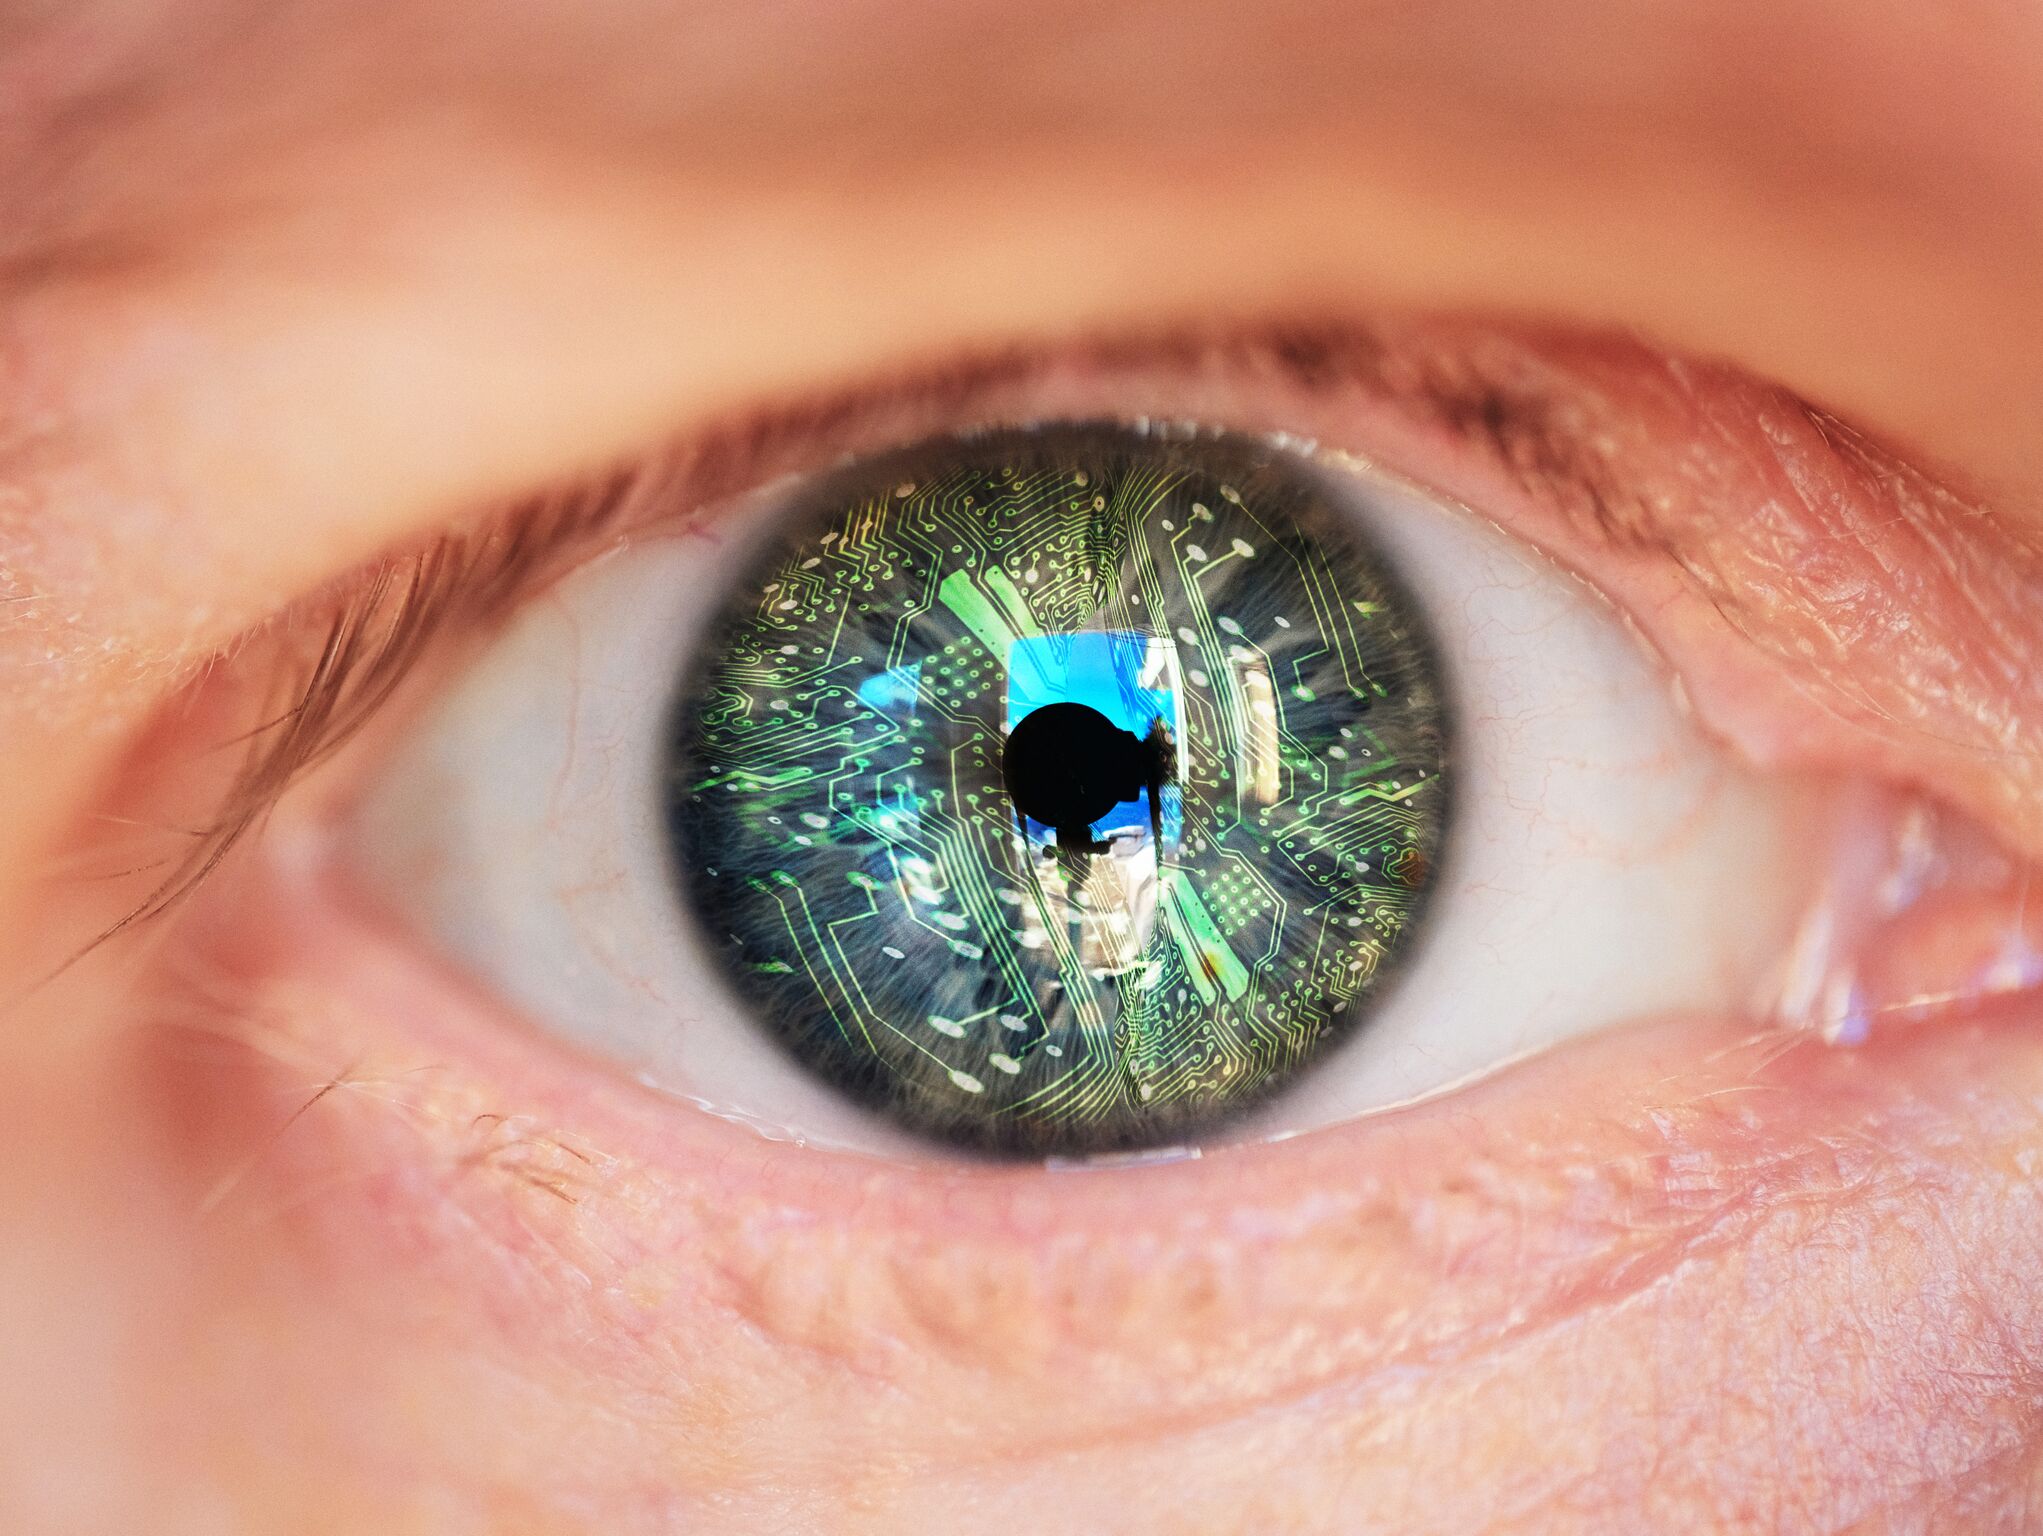 الذكاء الصنعي يساعد الاطباء على كشف أمراض العين بشكل مبكر ودقيق